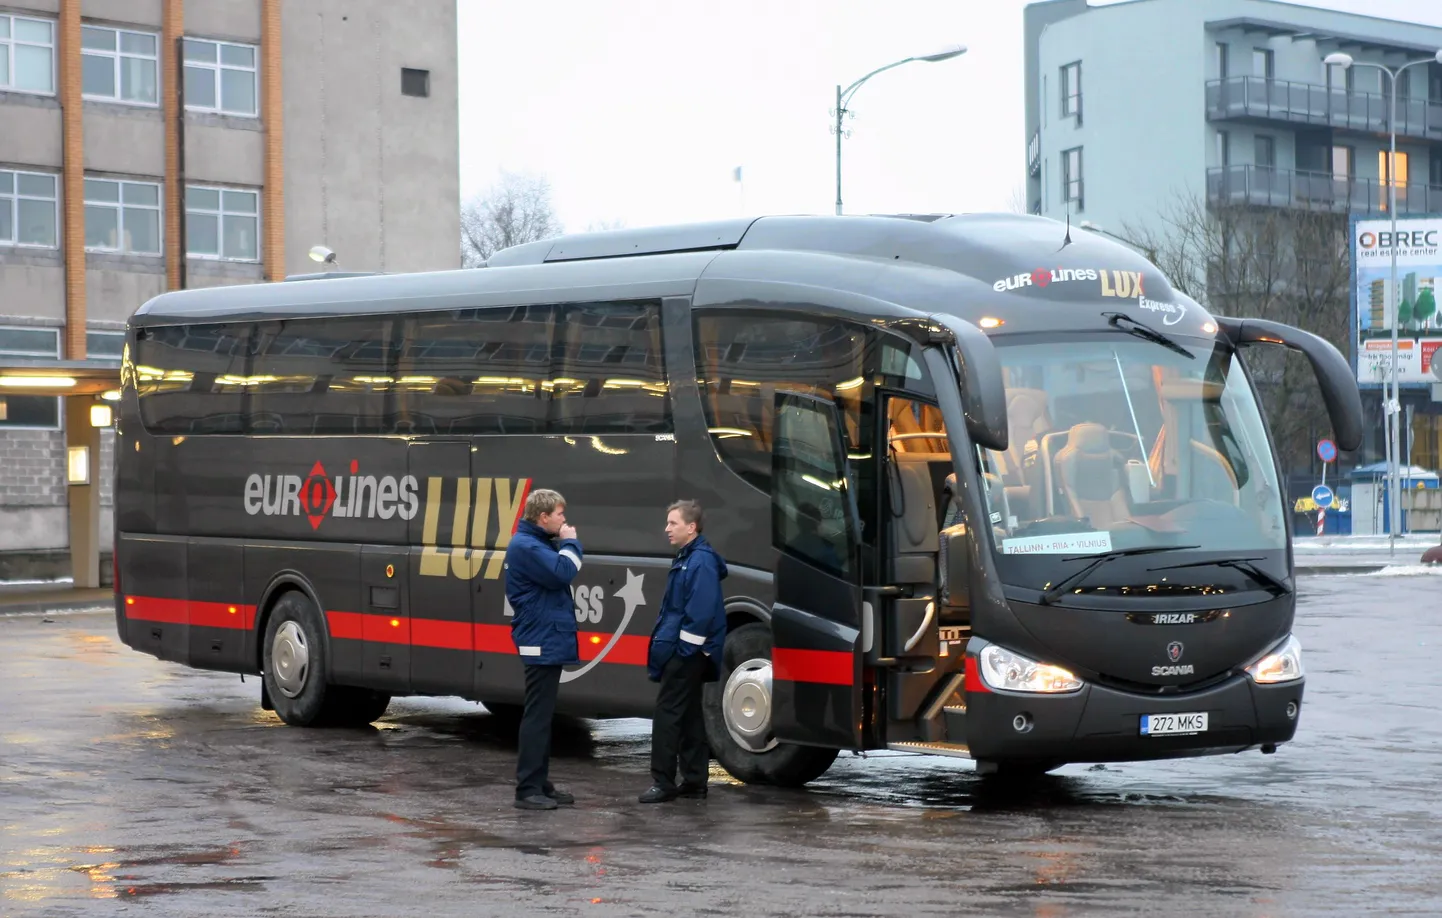 Автобус Eurolines Lux Express в Таллинне. Архивное фото.